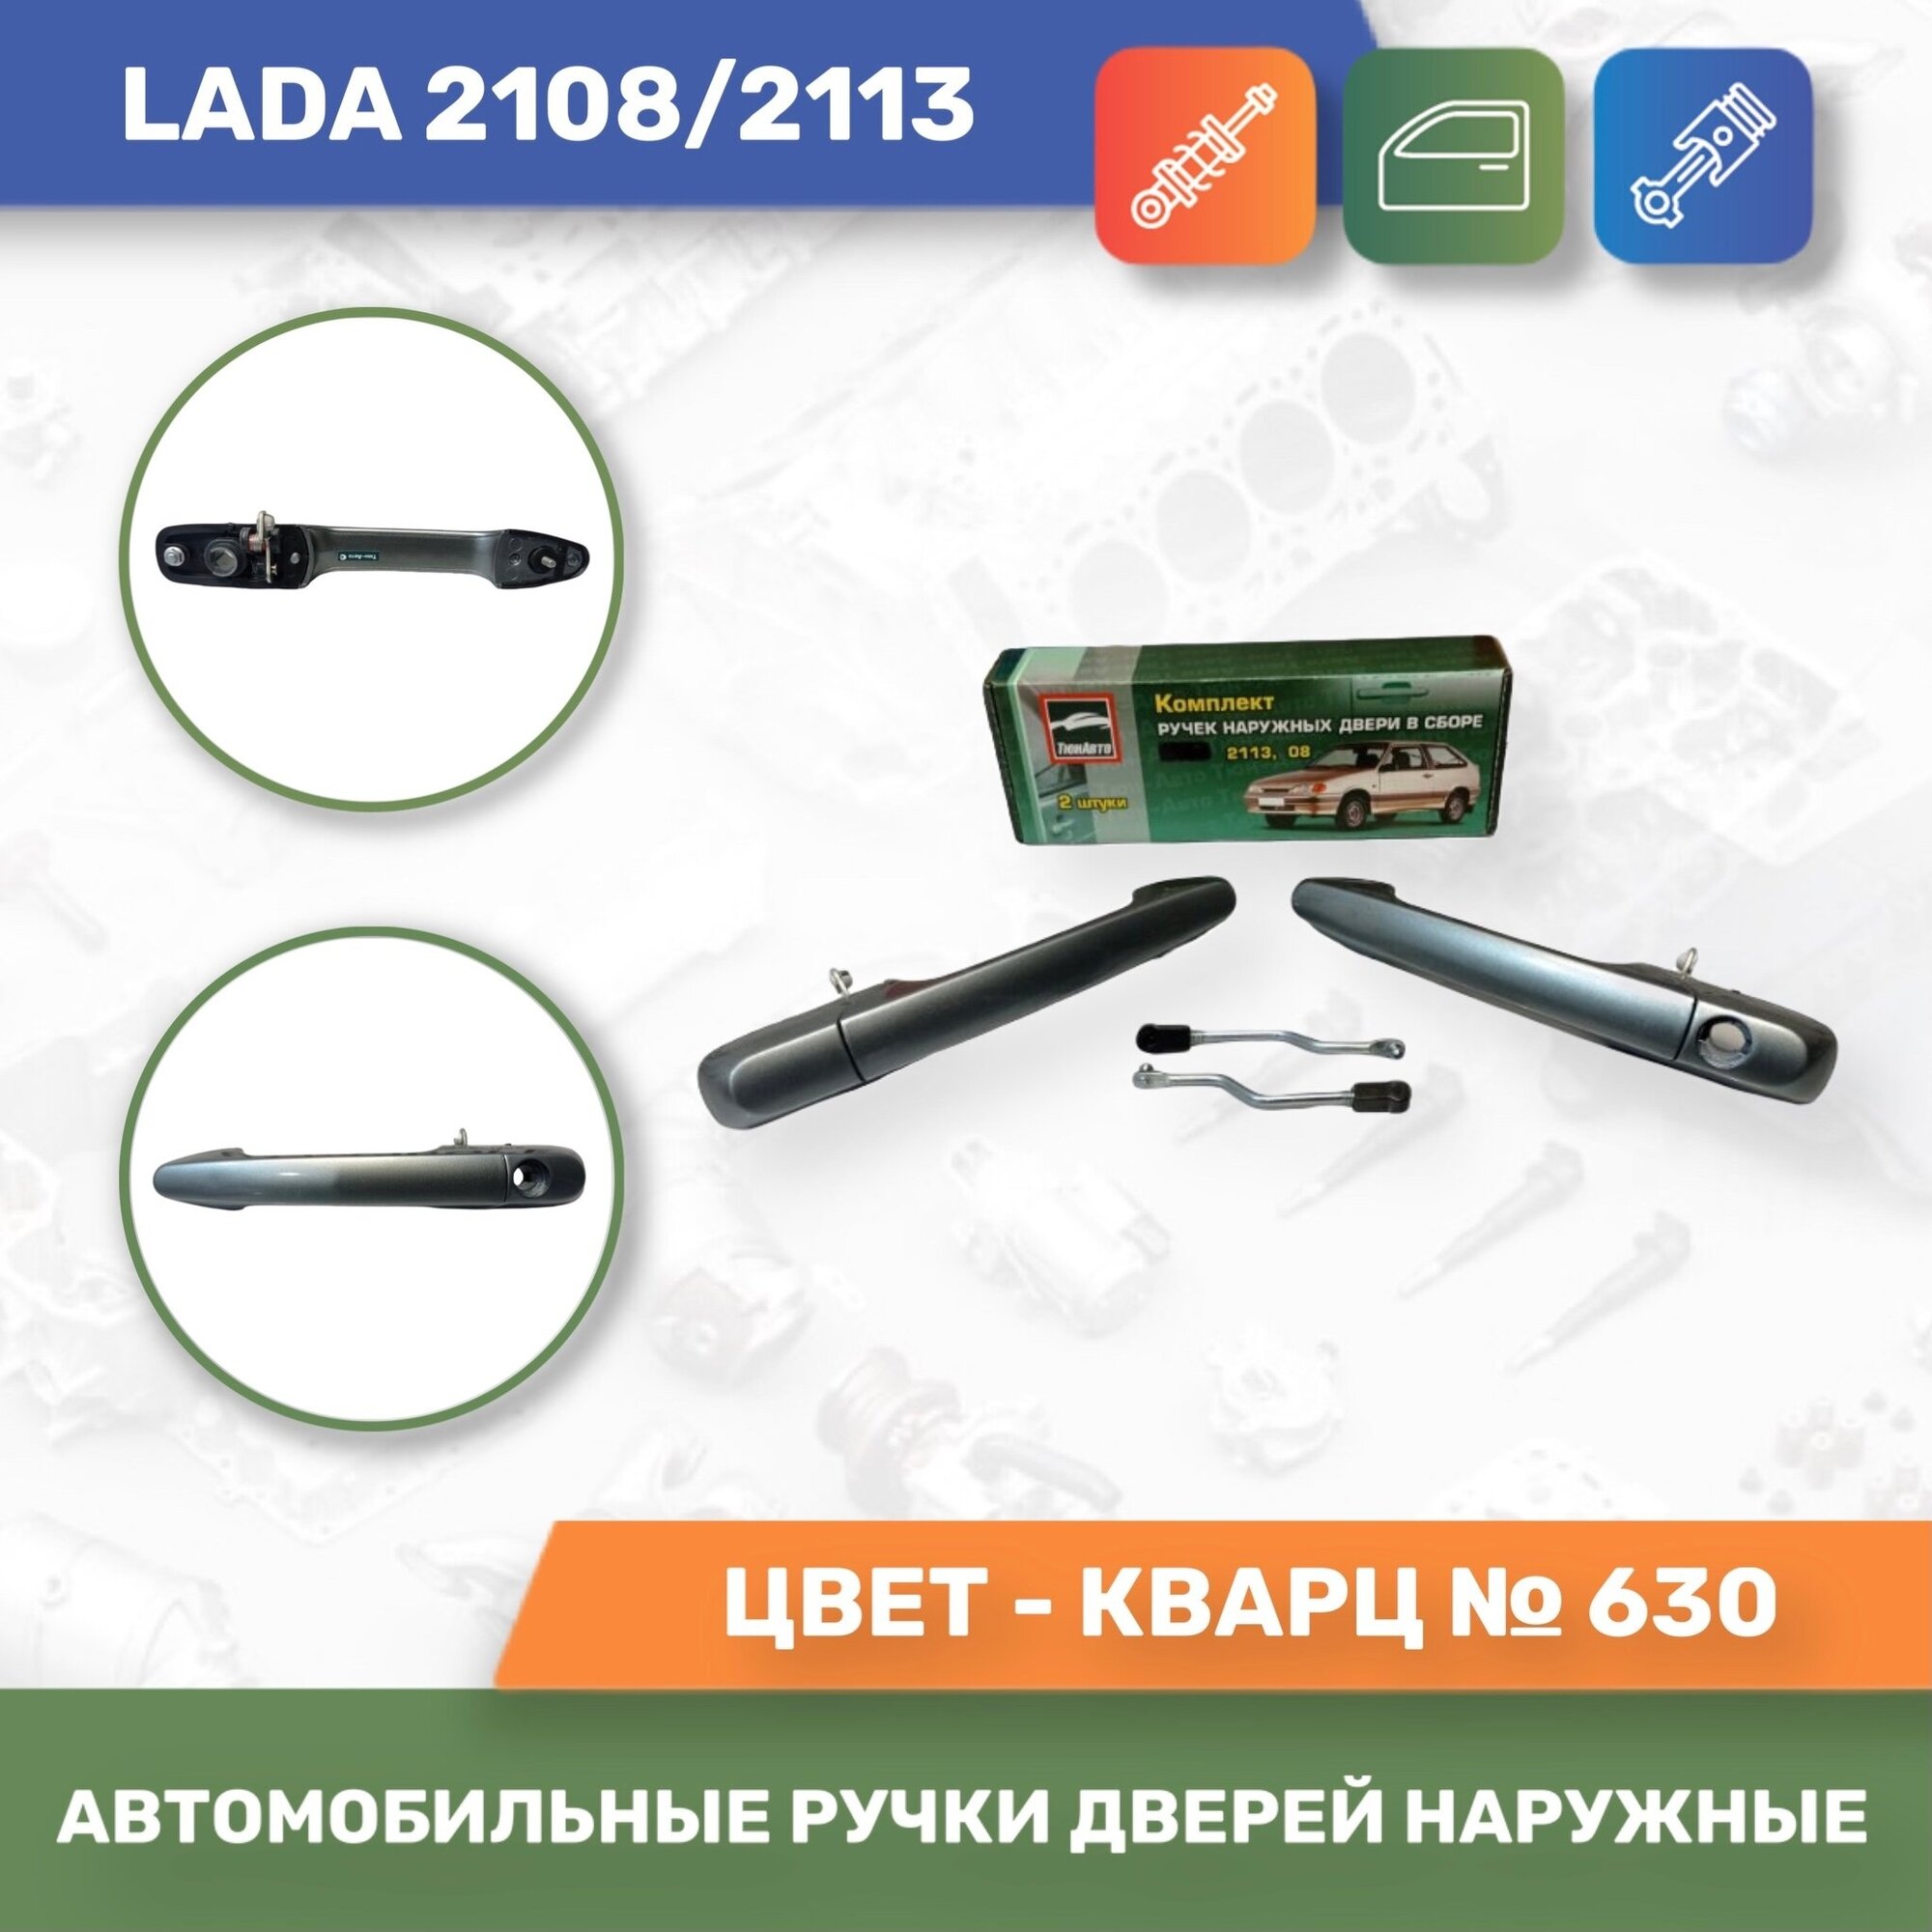 Автомобильные ручки дверей наружные евро к-т 2шт. Кварц № 630 для Lada 2108/2113